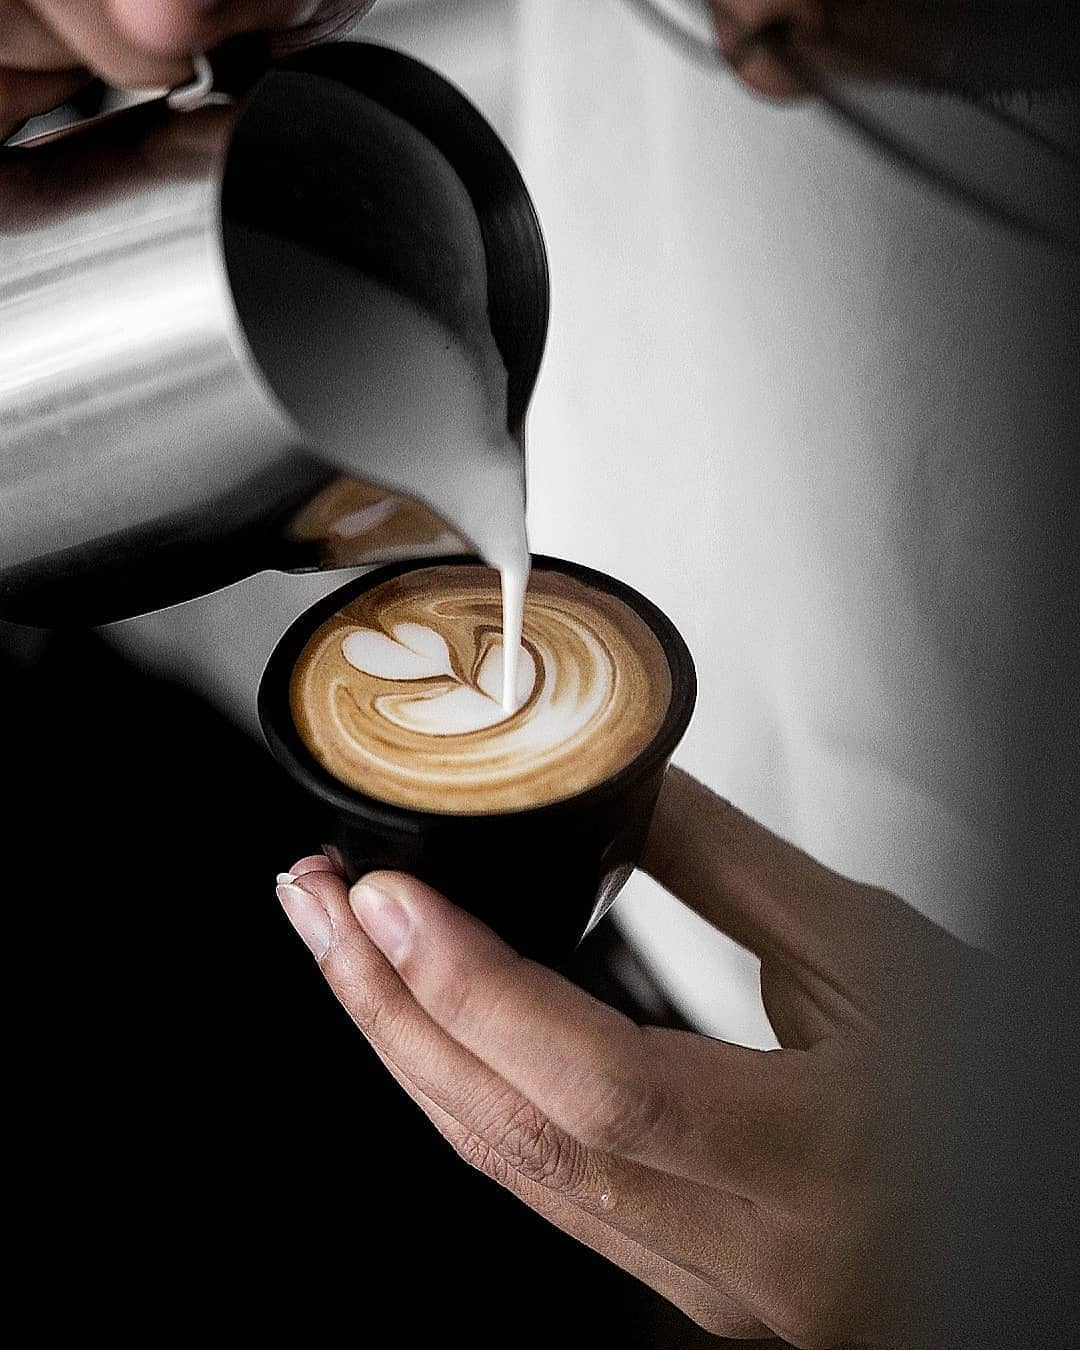 caffe-latte-edwardtanujayaa-1567151330.jpg